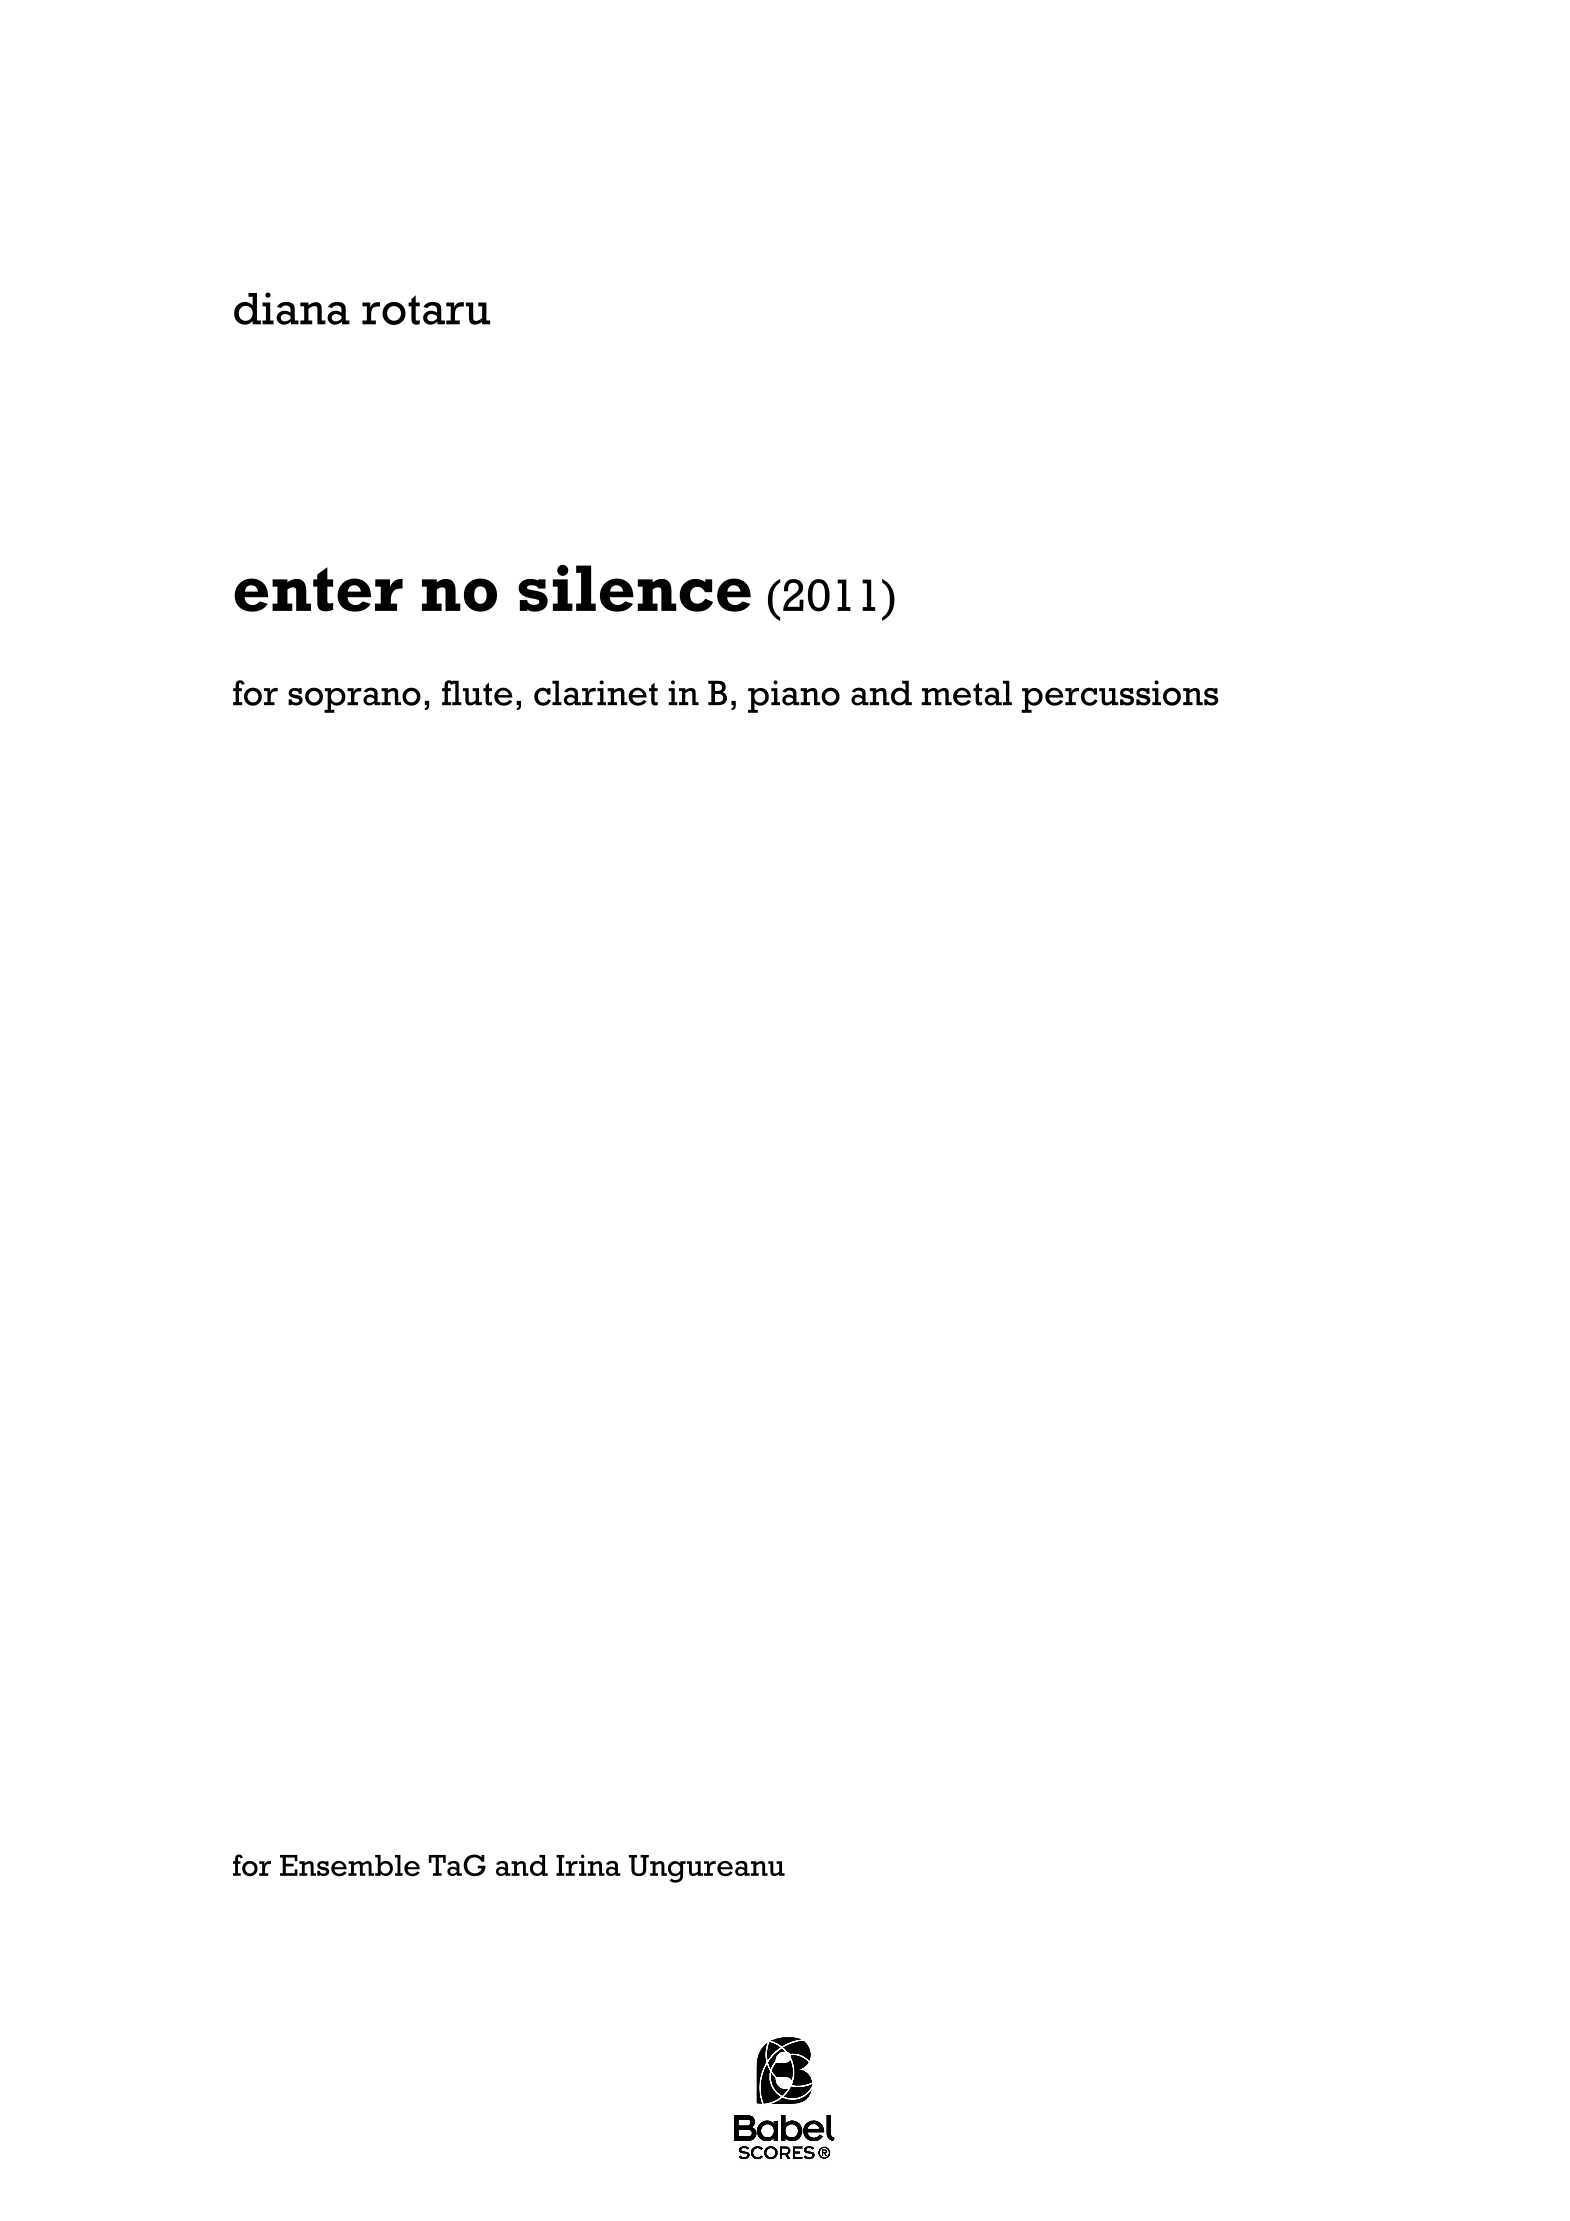 Enter no silence A4 z